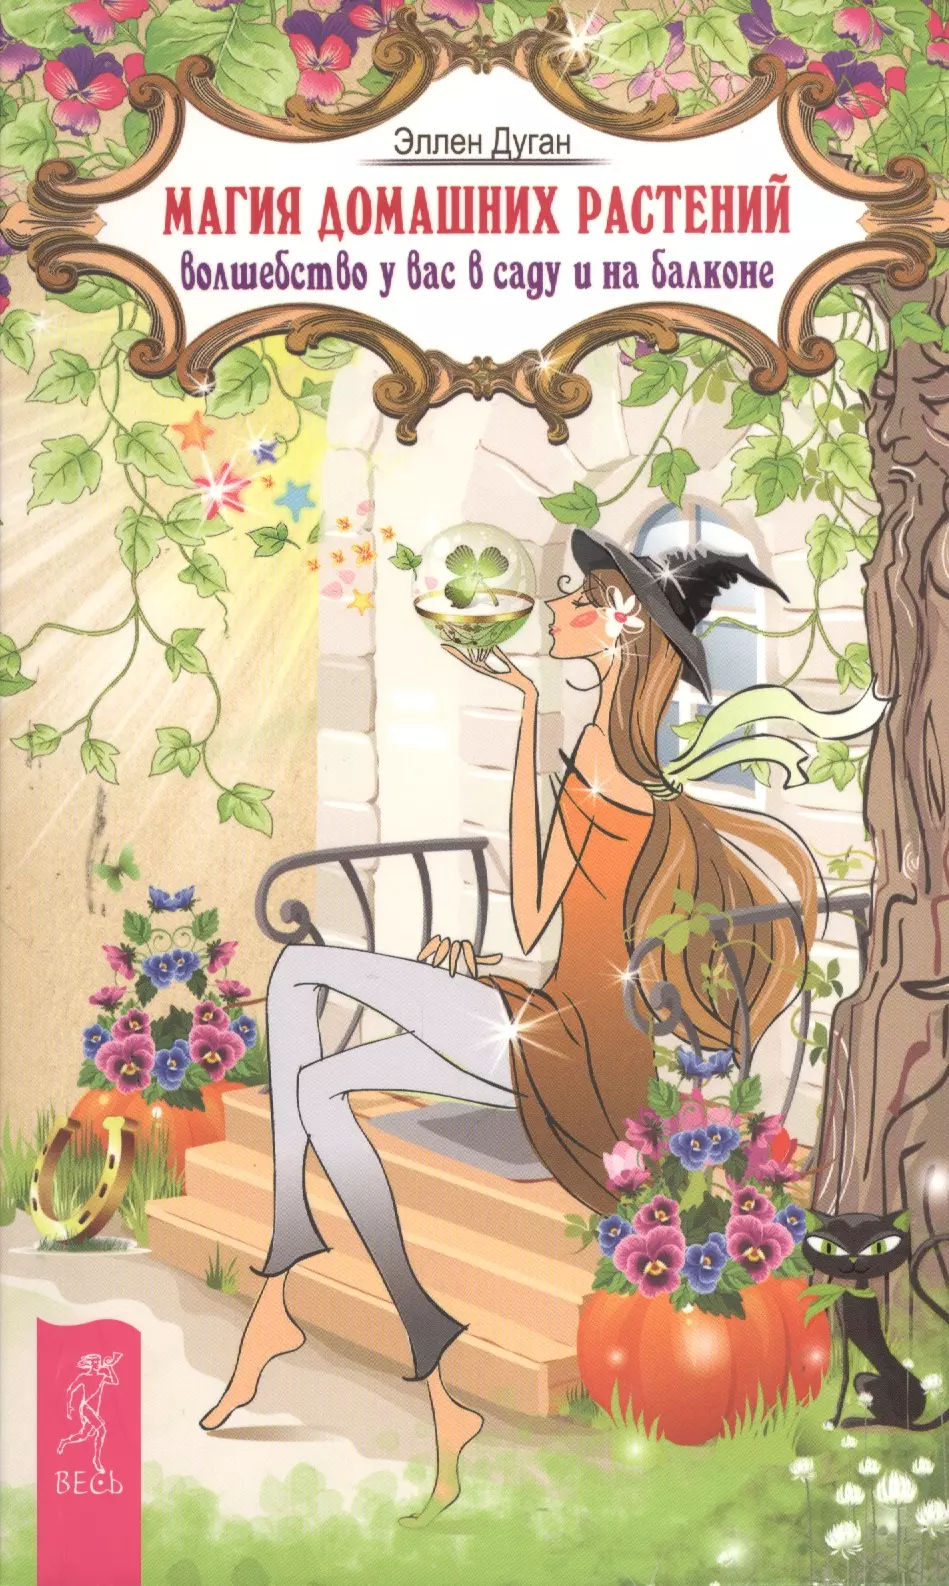 Дуган Эллен - Магия домашних растений: волшебство у вас в саду и на балконе